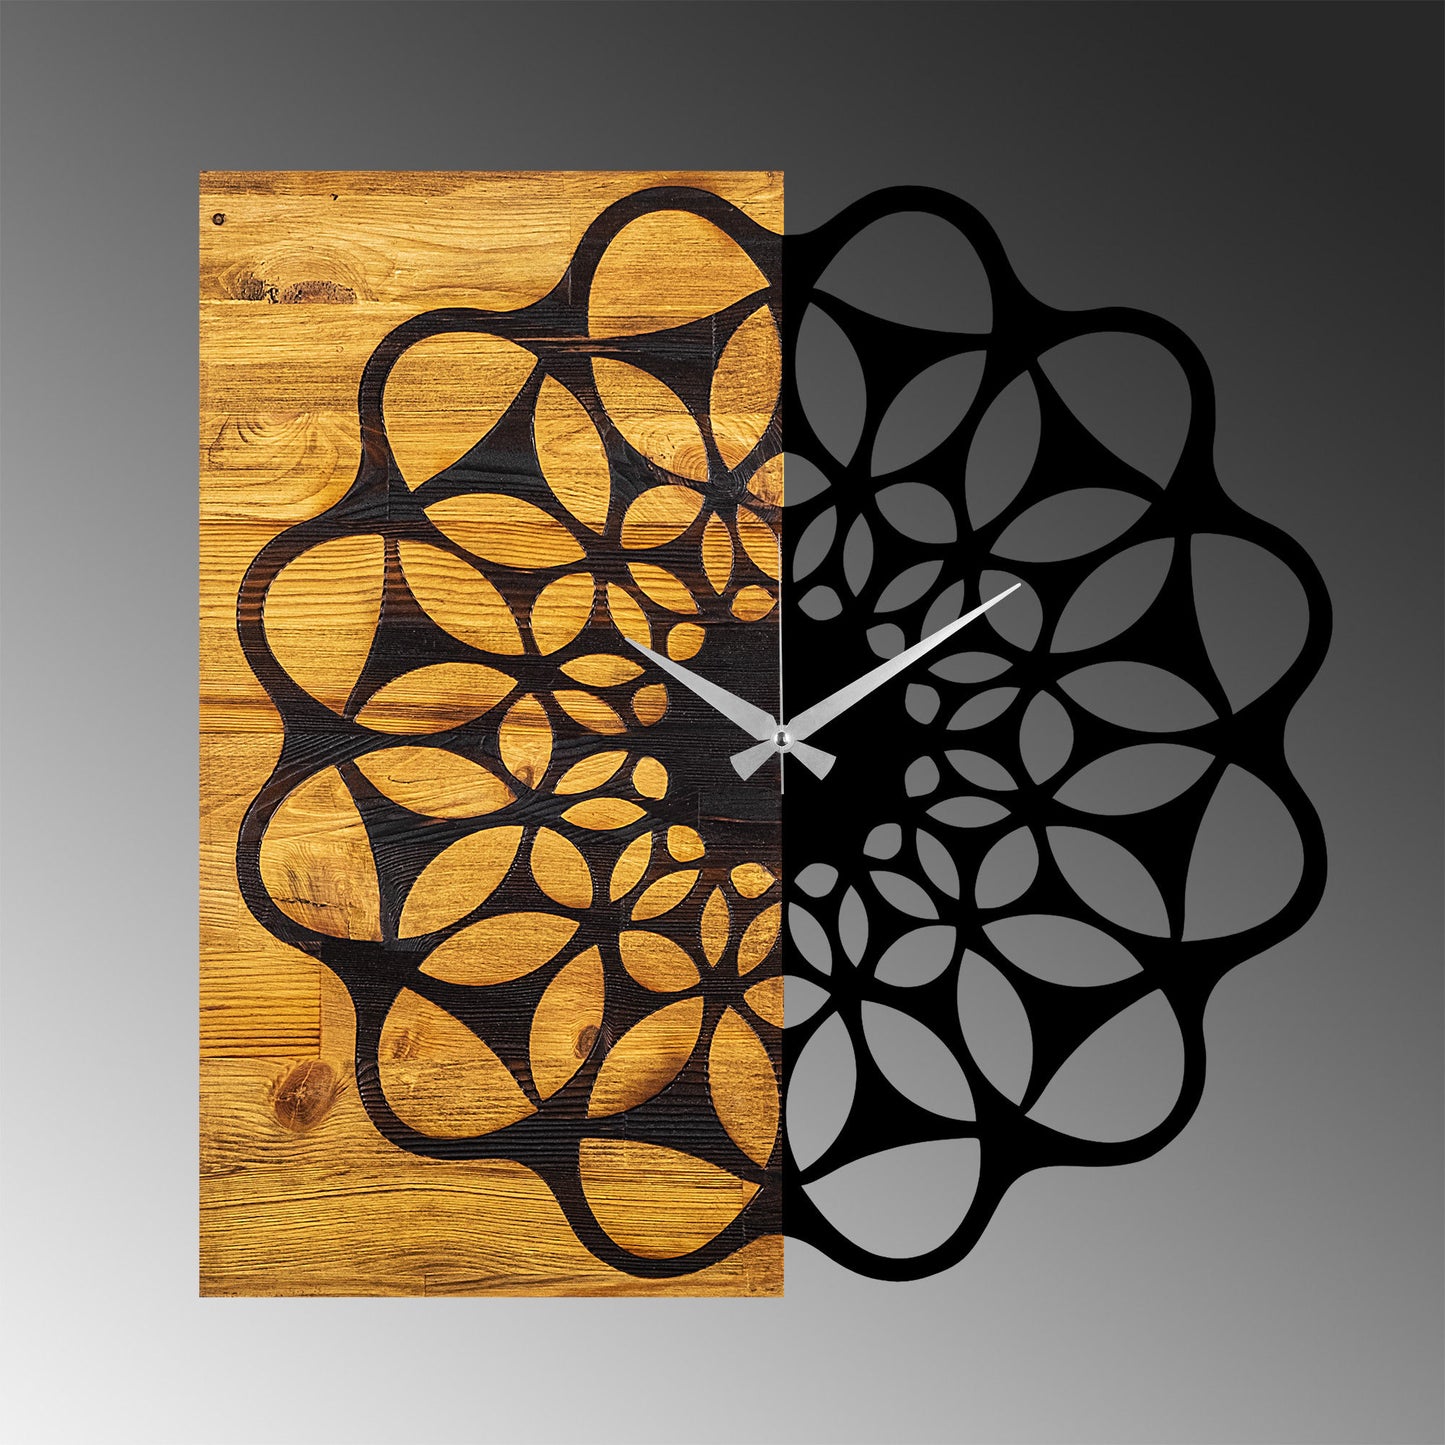 Wooden Clock 23 - Decorative Wooden Wall Clock